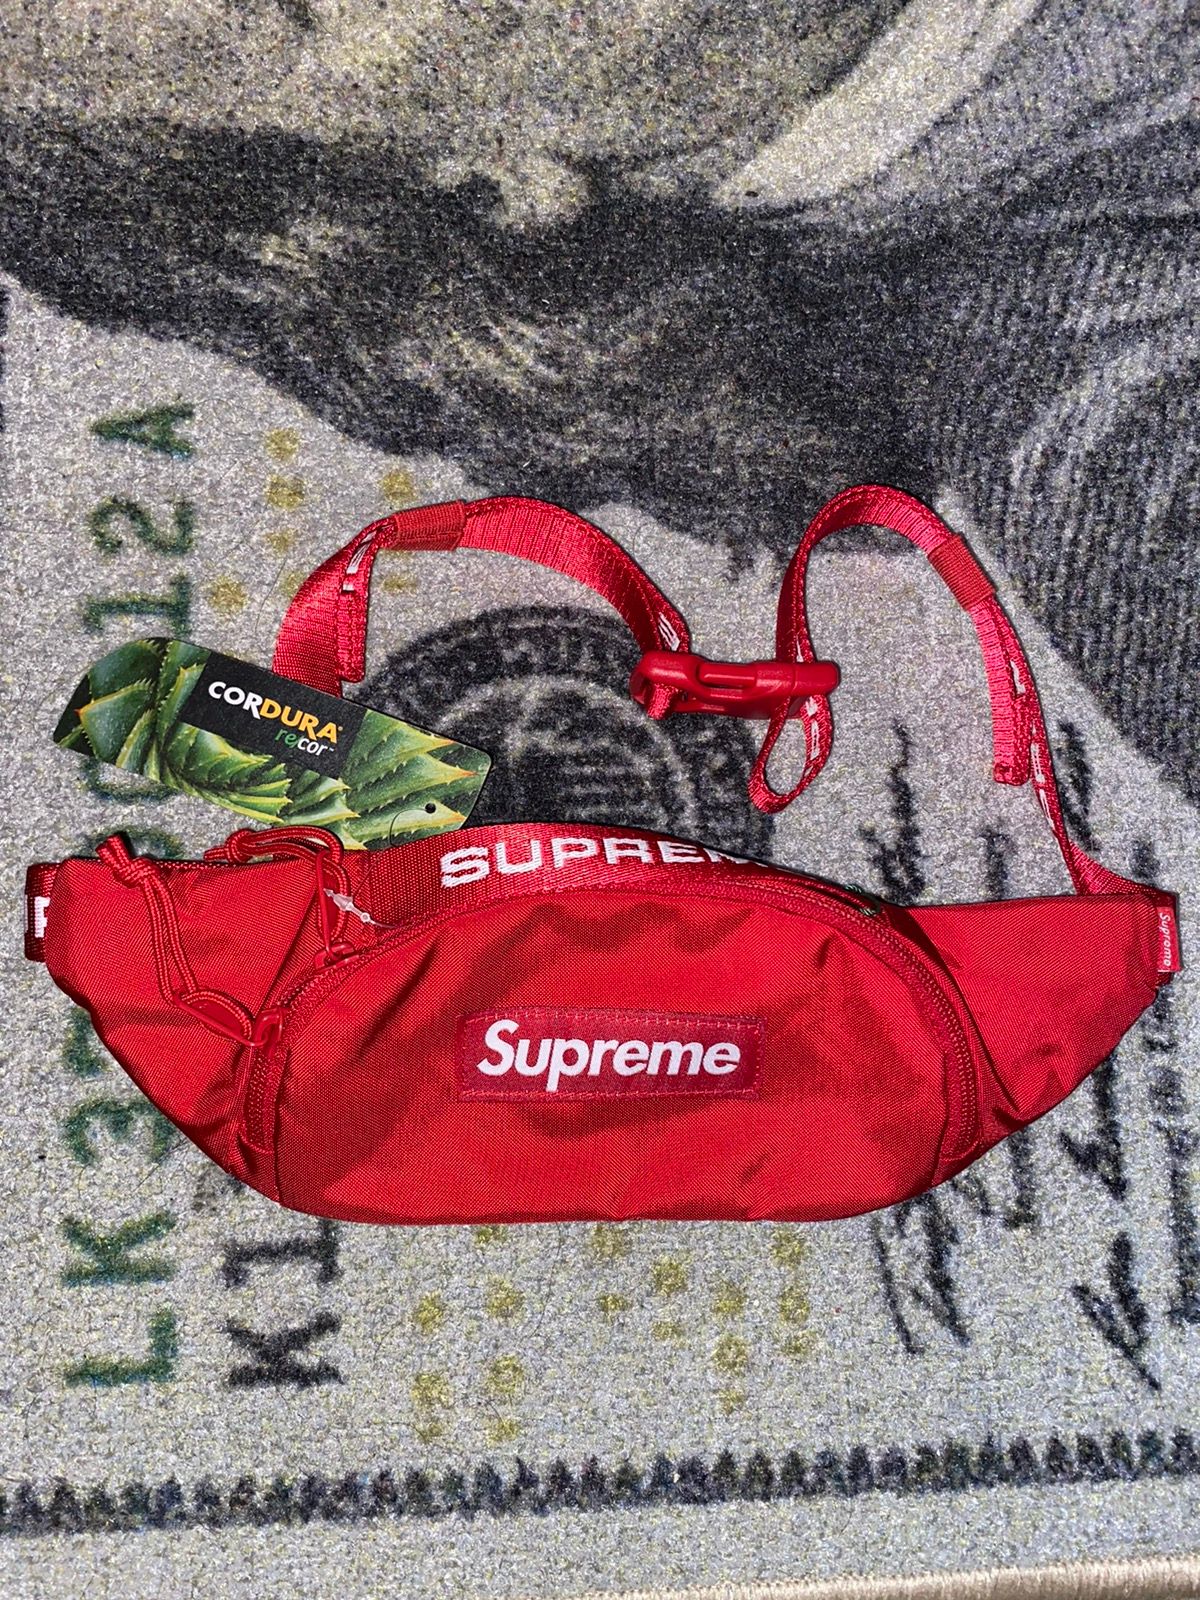 Supreme Supreme Small Waist Bag (FW22) Red